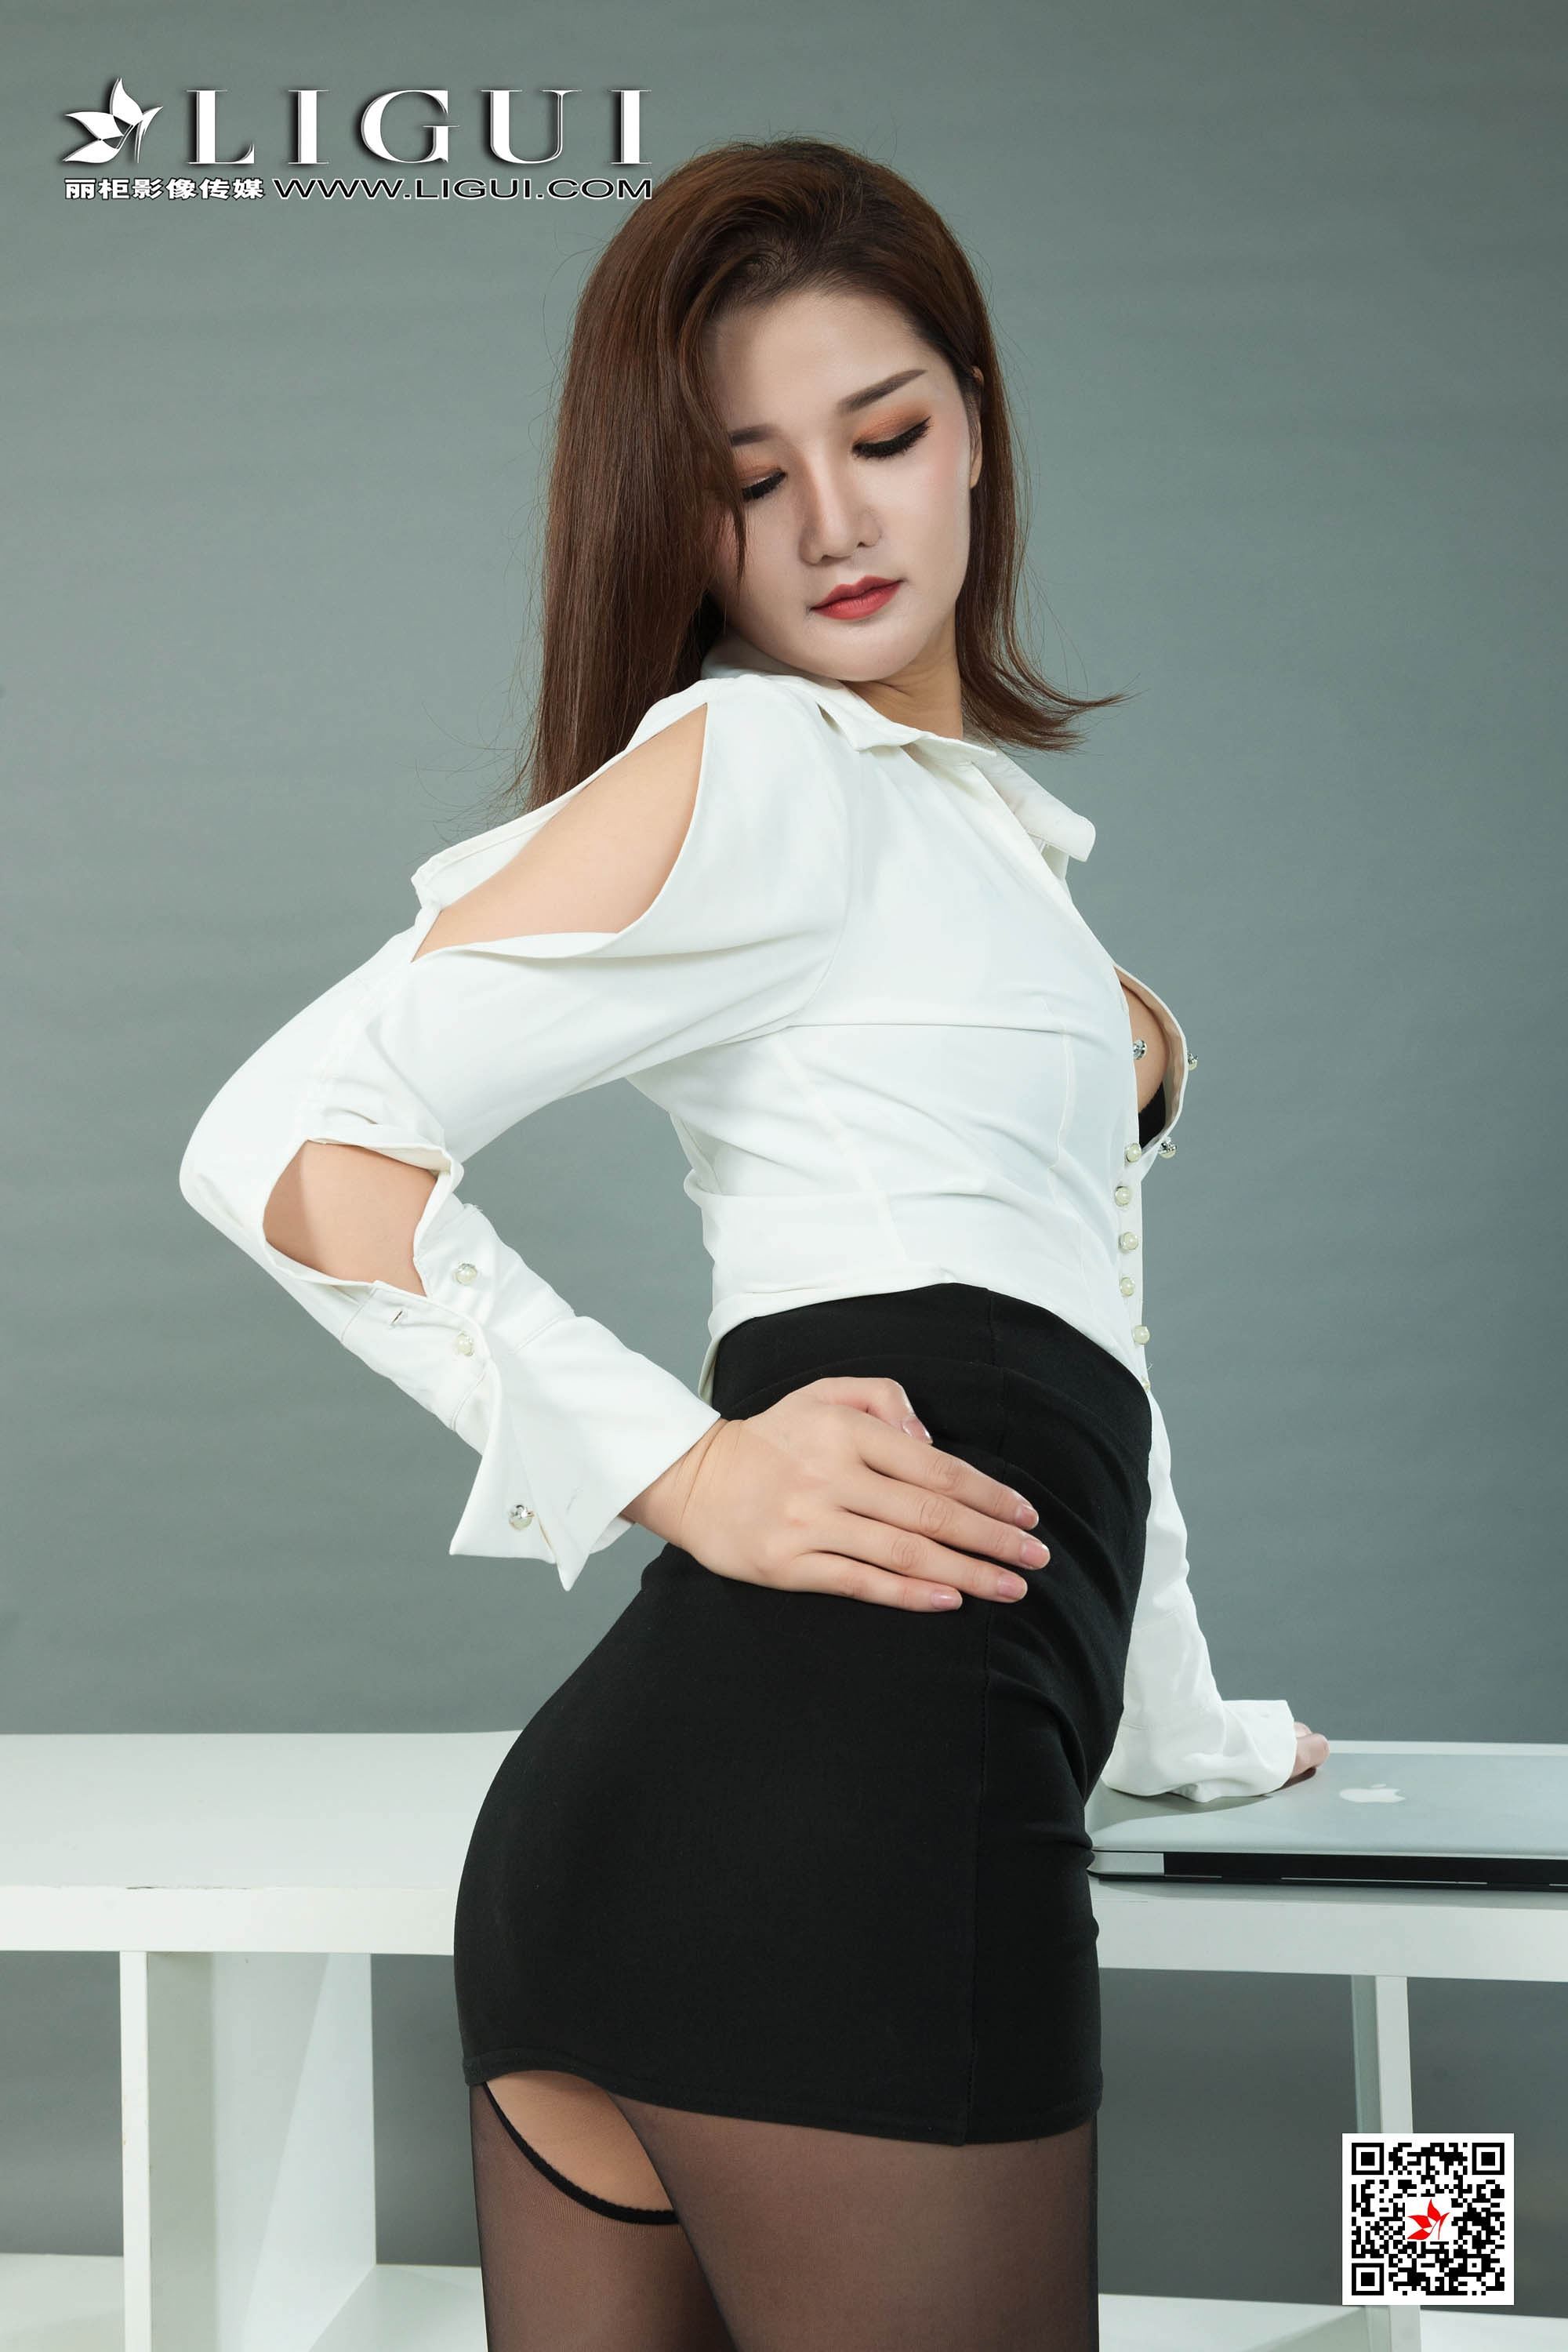 Li Gui Li cabinet 2020.04.02 network beauty model Wen Rui